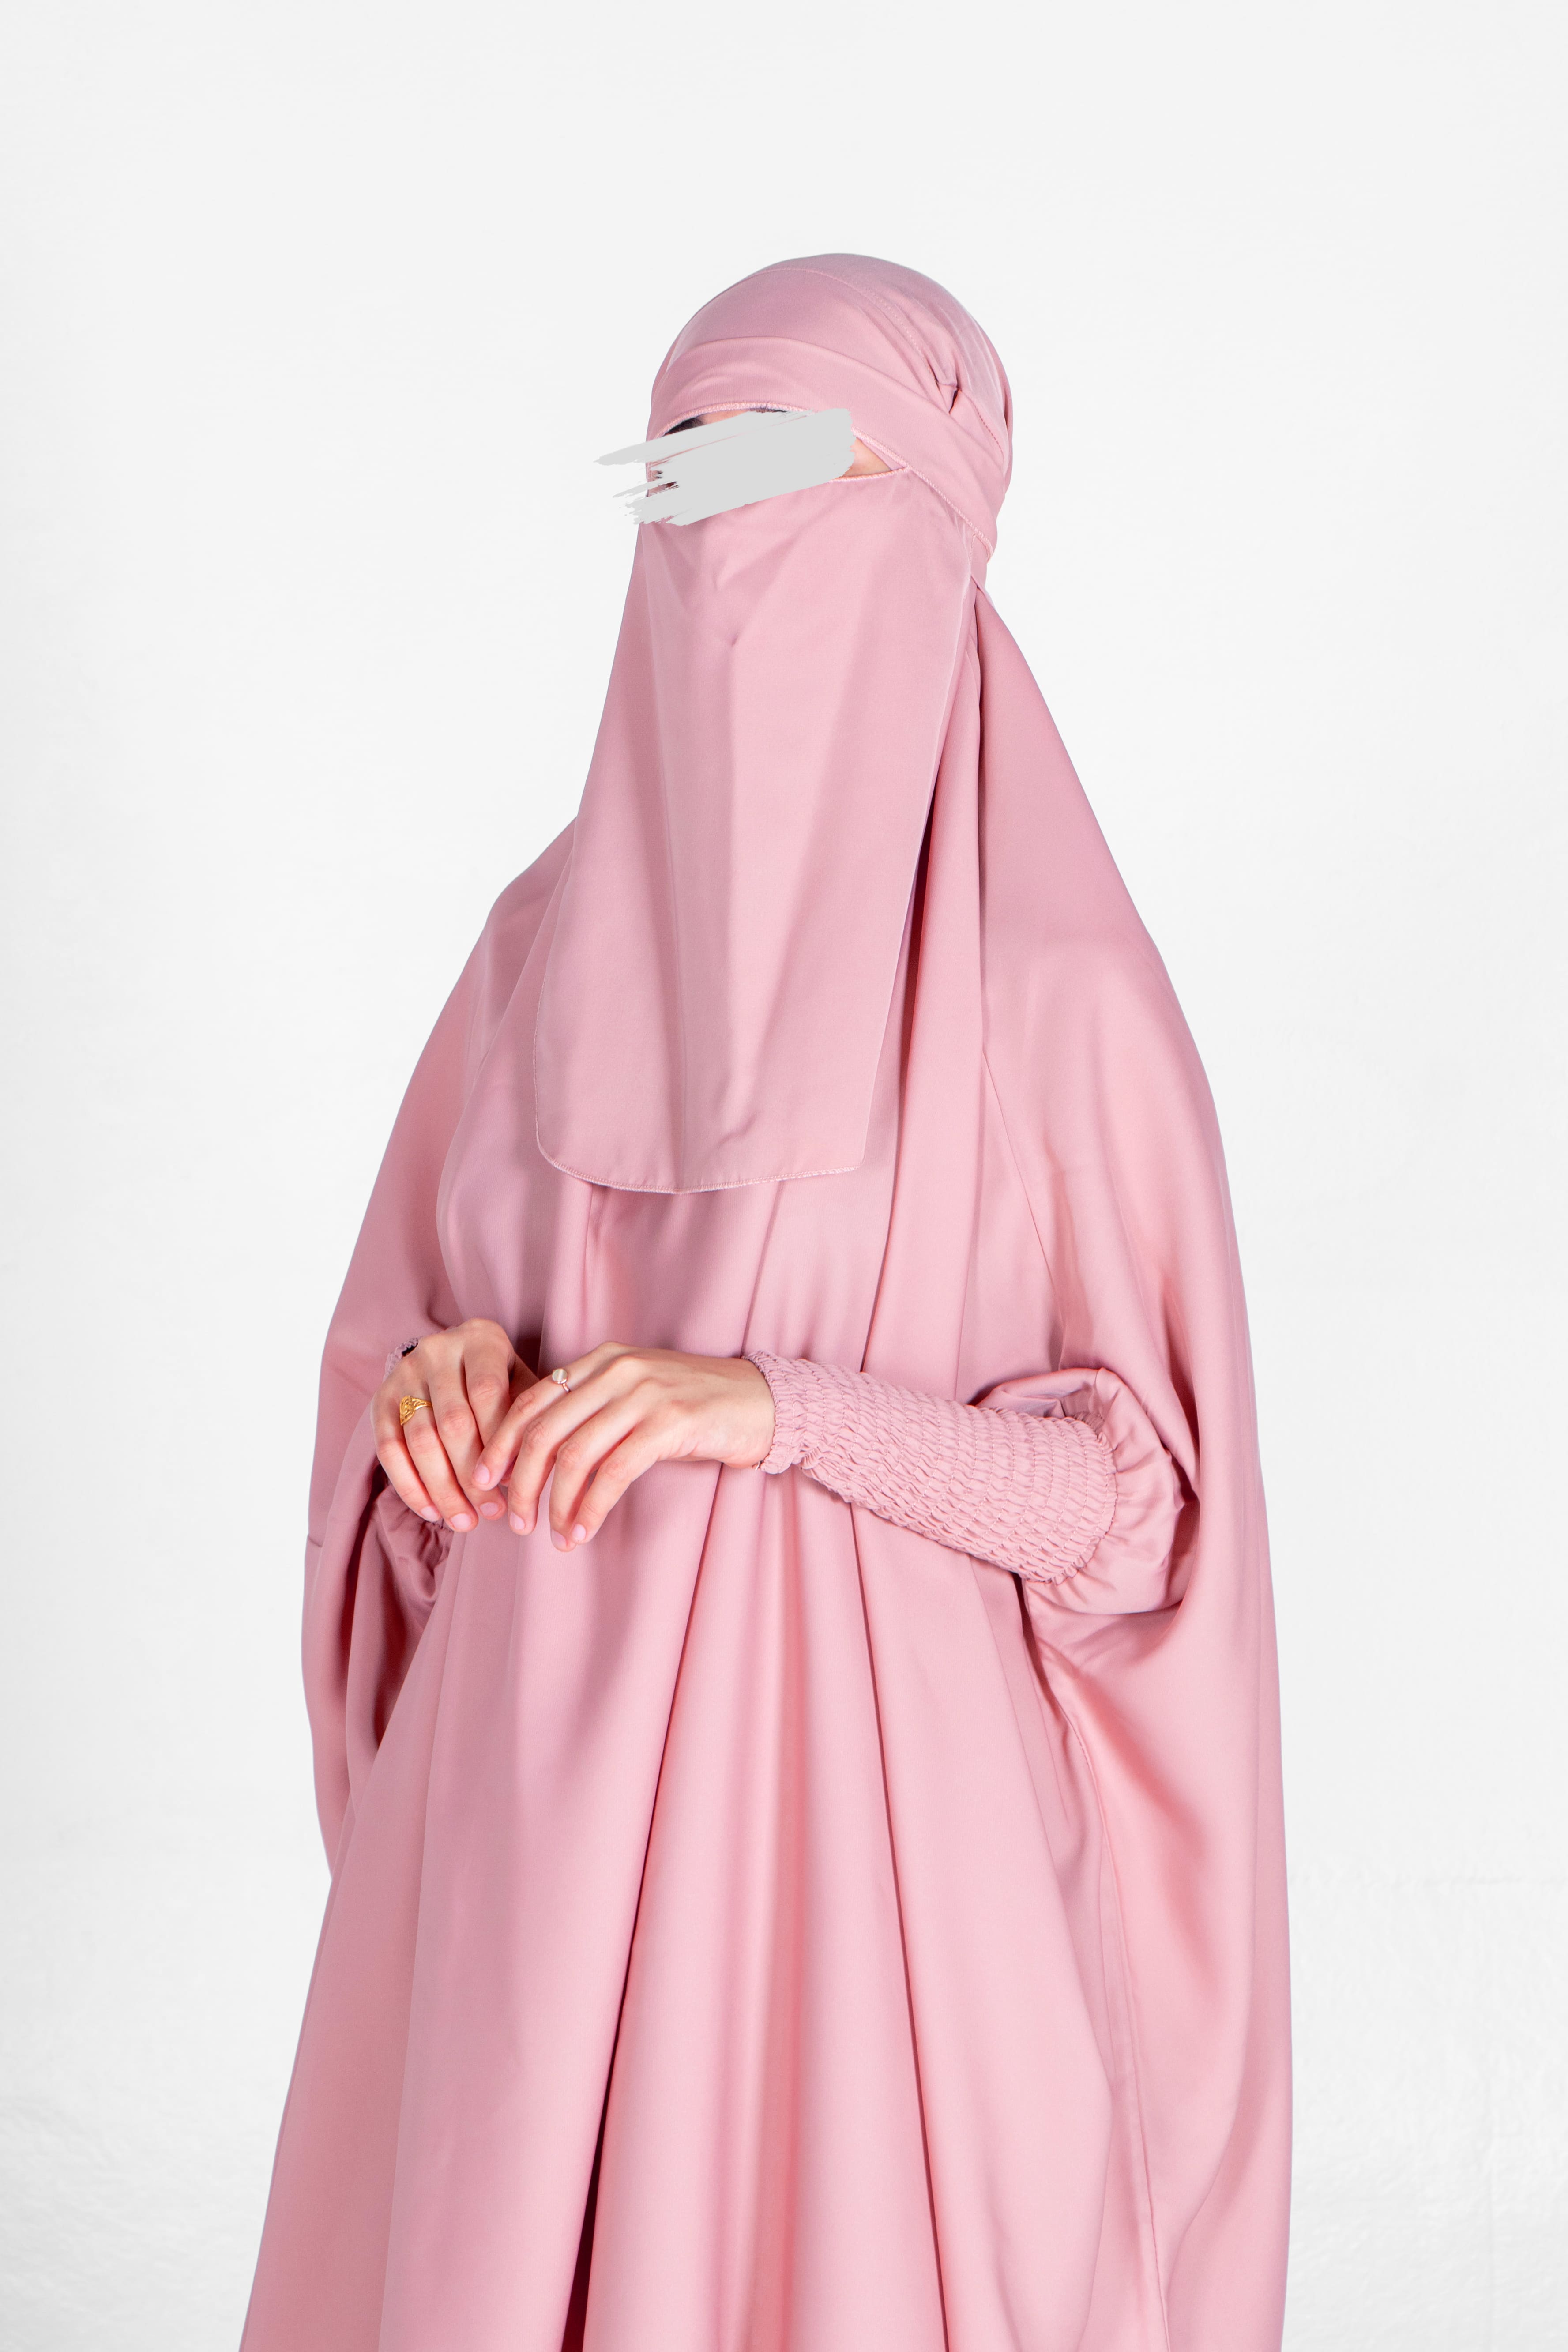 Cherry Blossom Jilbab - Jilbab - Muslim Lifestyle Store